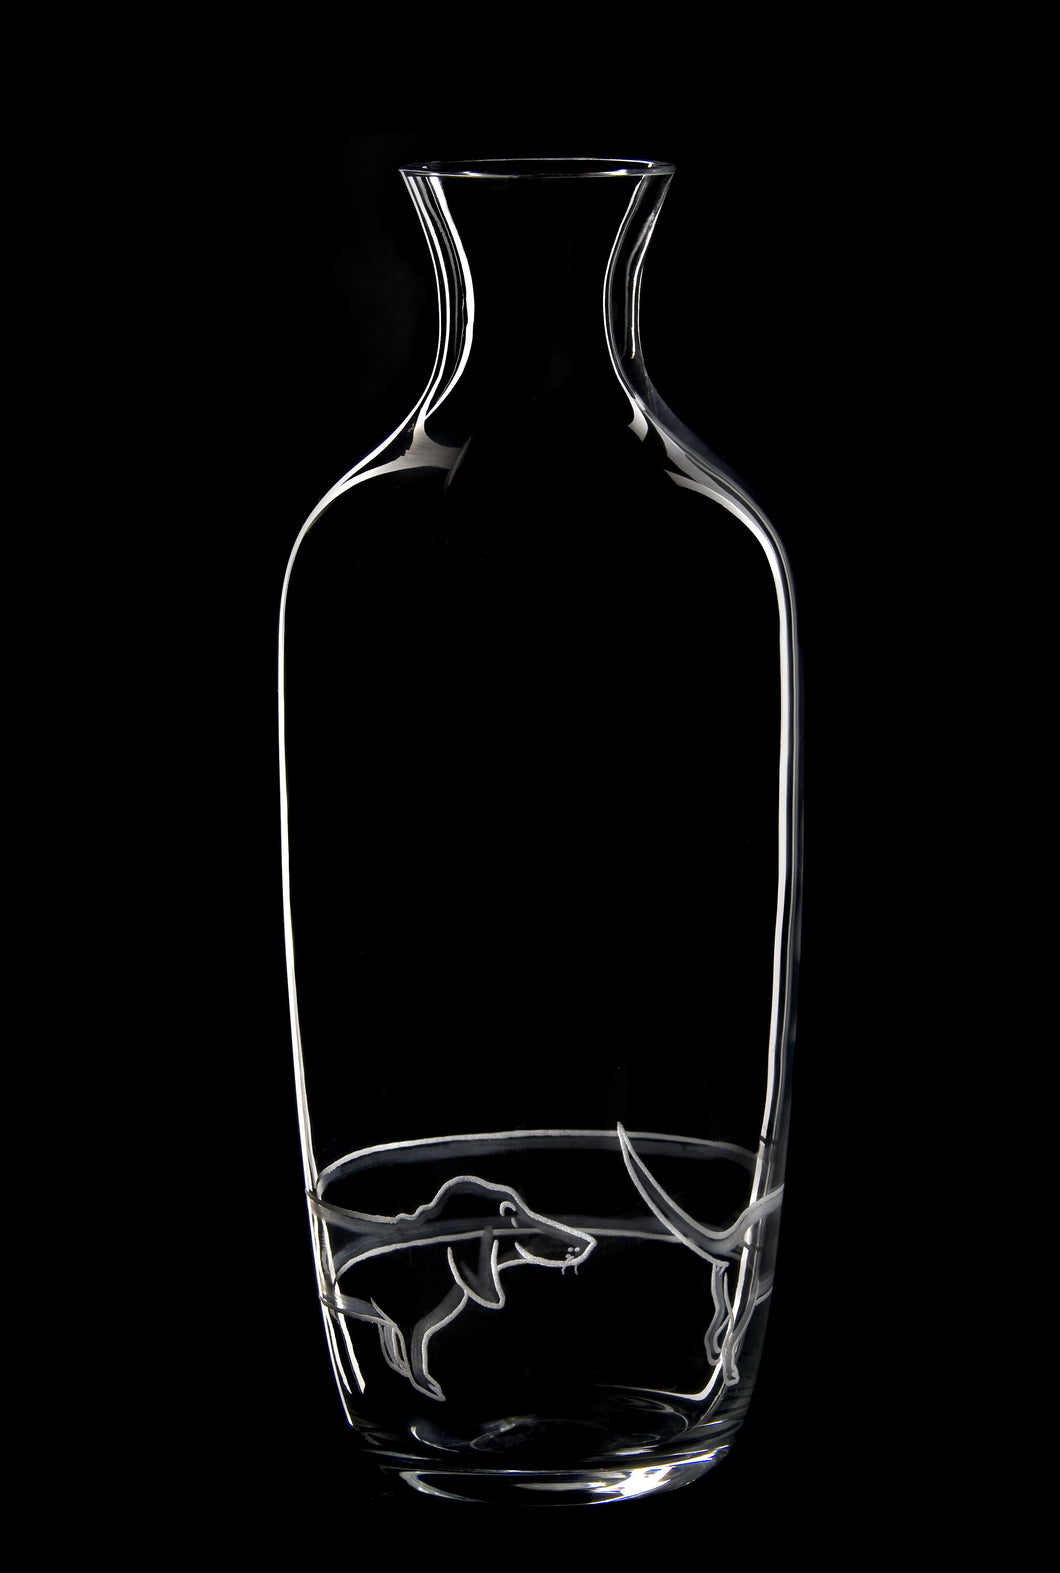 FERDINAND klar, Gravur 'Ferdinand' - Flasche 0,7 l, 217 mm